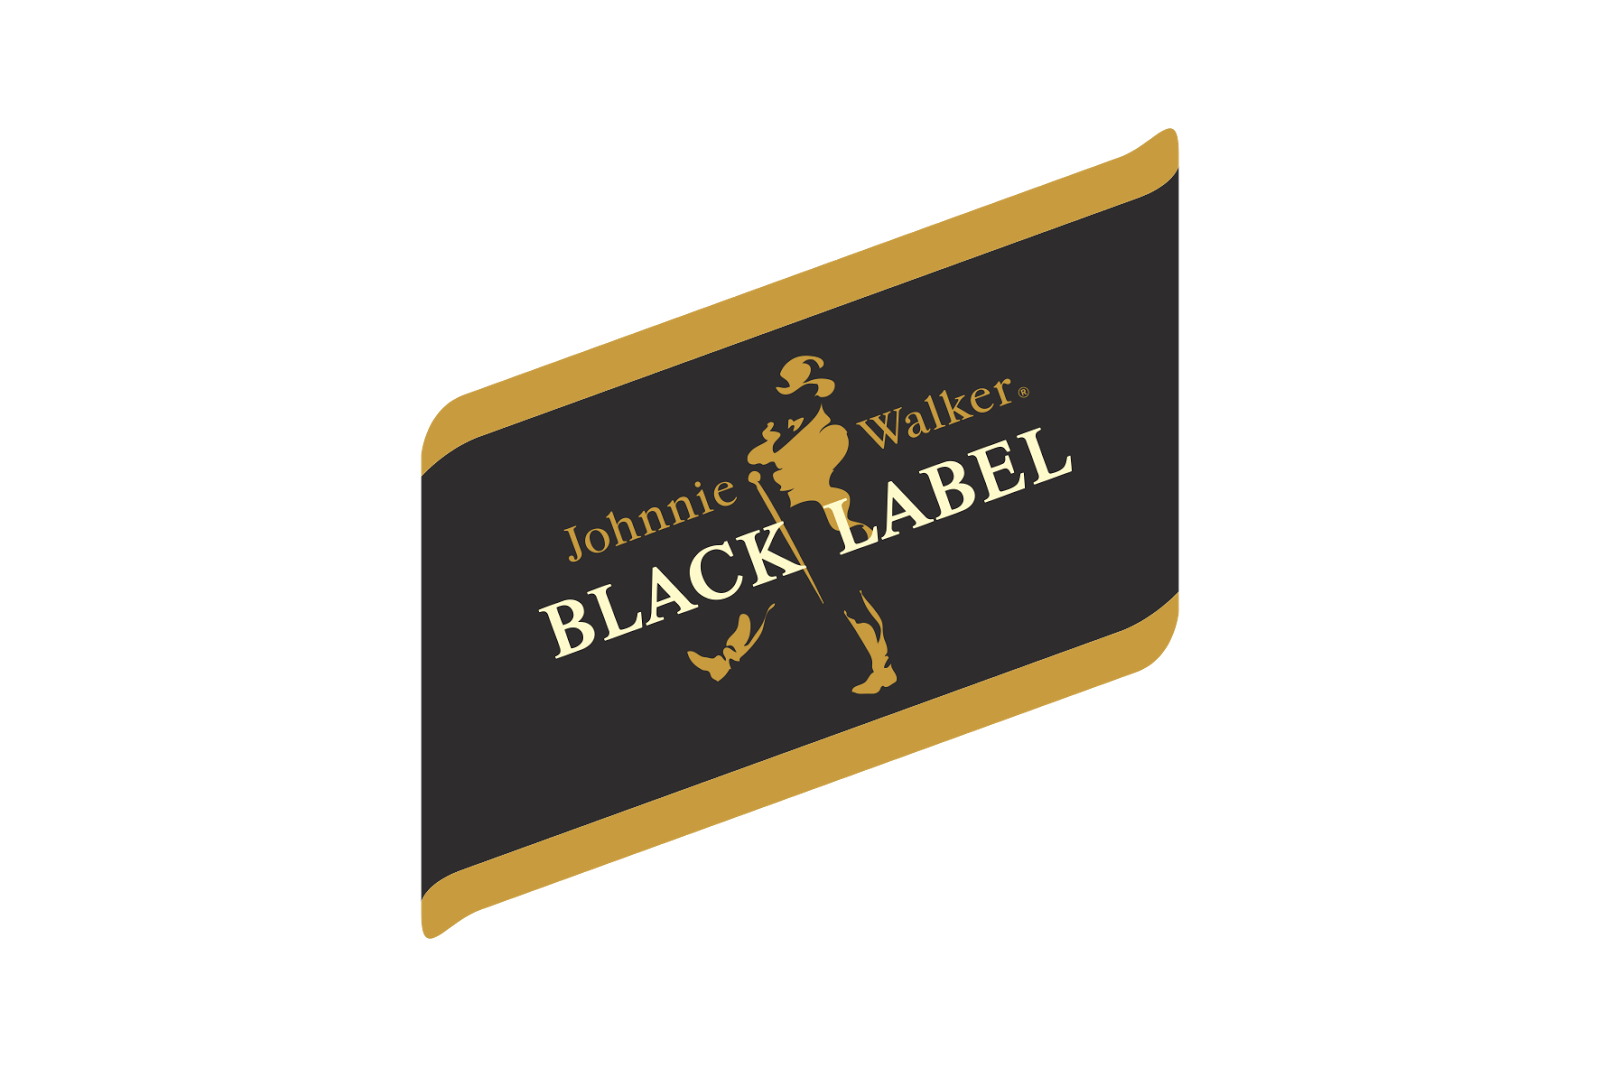 Black Label Logo - Johnnie Walker Black Label Logo - logo cdr vector